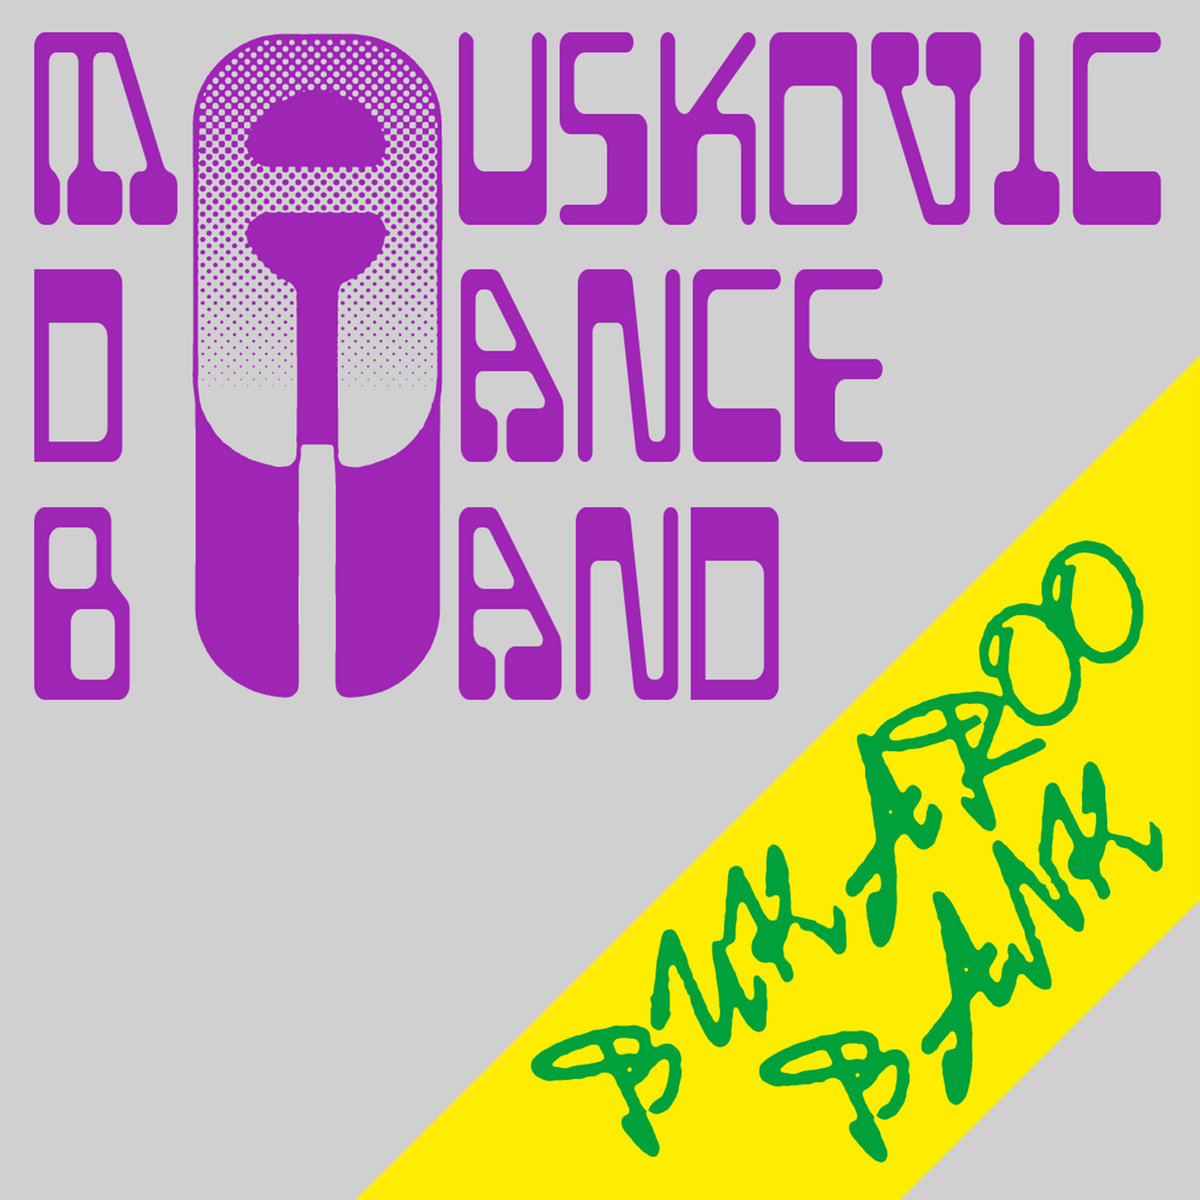 MAUSKOVIC DANCE BAND – BUKAROO BANK – LP - VINYL 33 TOURS DISQUE VINYLE LP PARIS MONTPELLIER GROUND ZERO PLATINE PRO-JECT ALBUM TOURNE-DISQUE